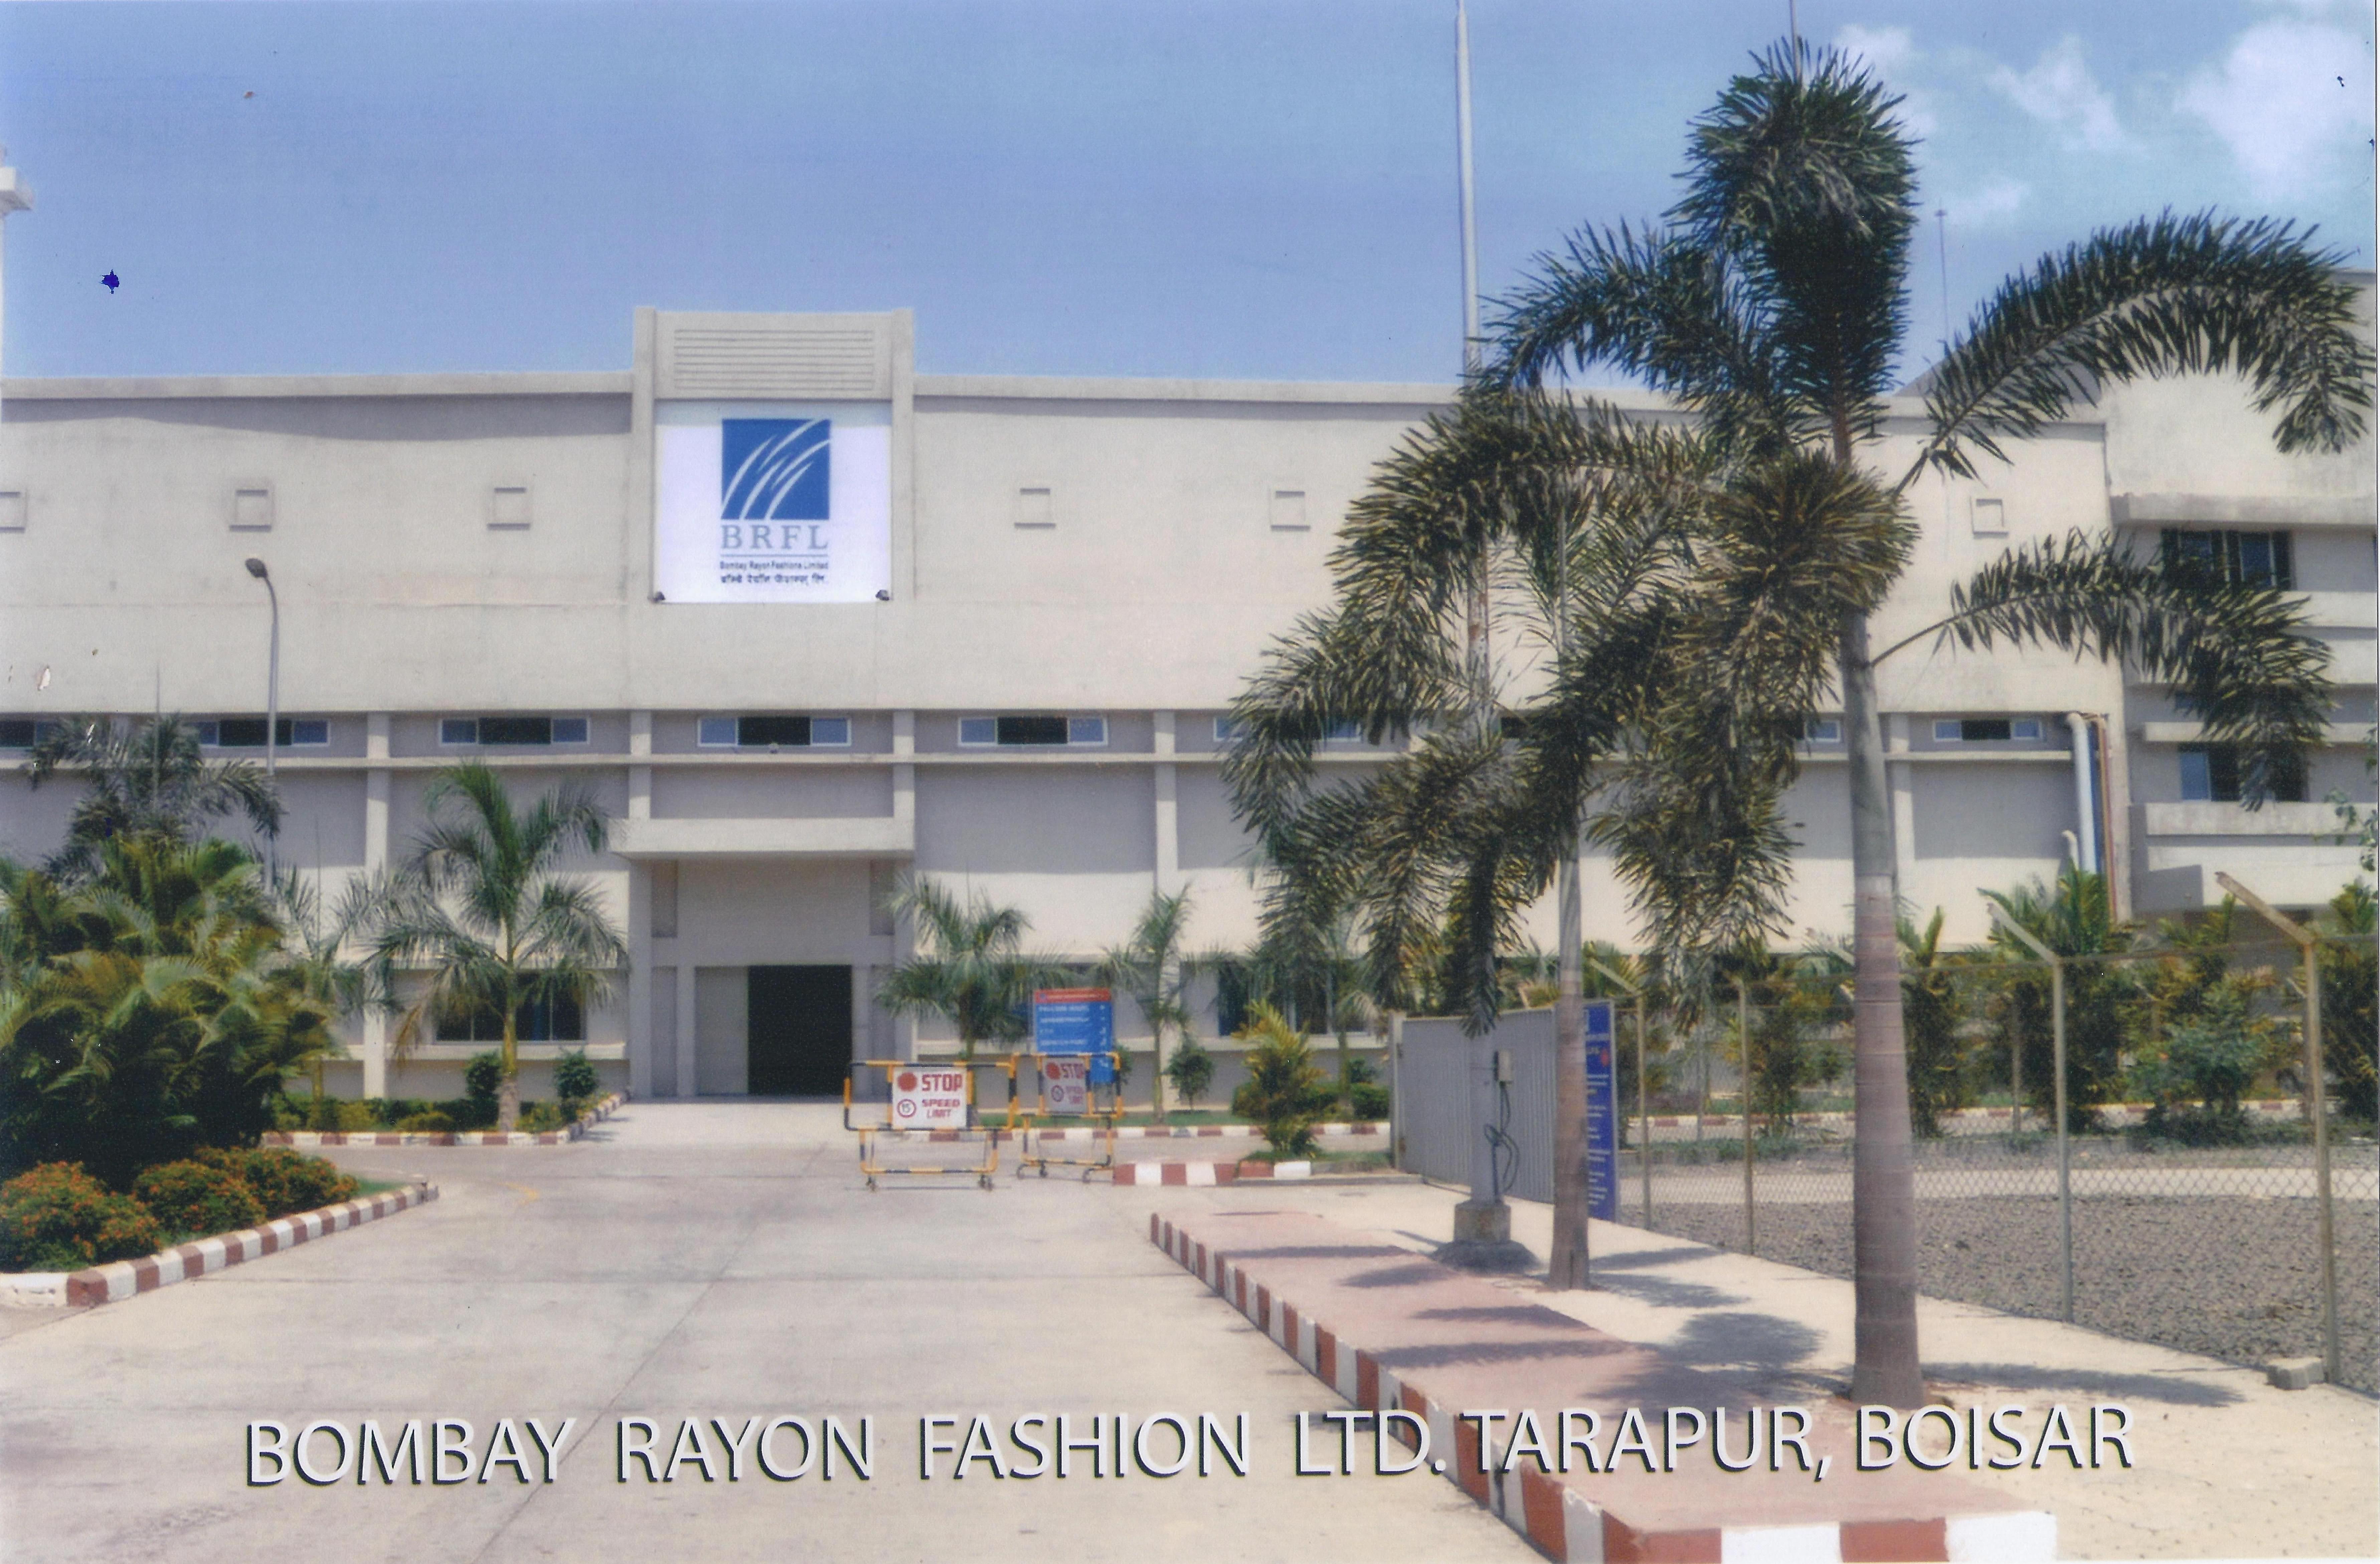 Bombay Rayon Fashions Ltd., - Tarapur, Boisar